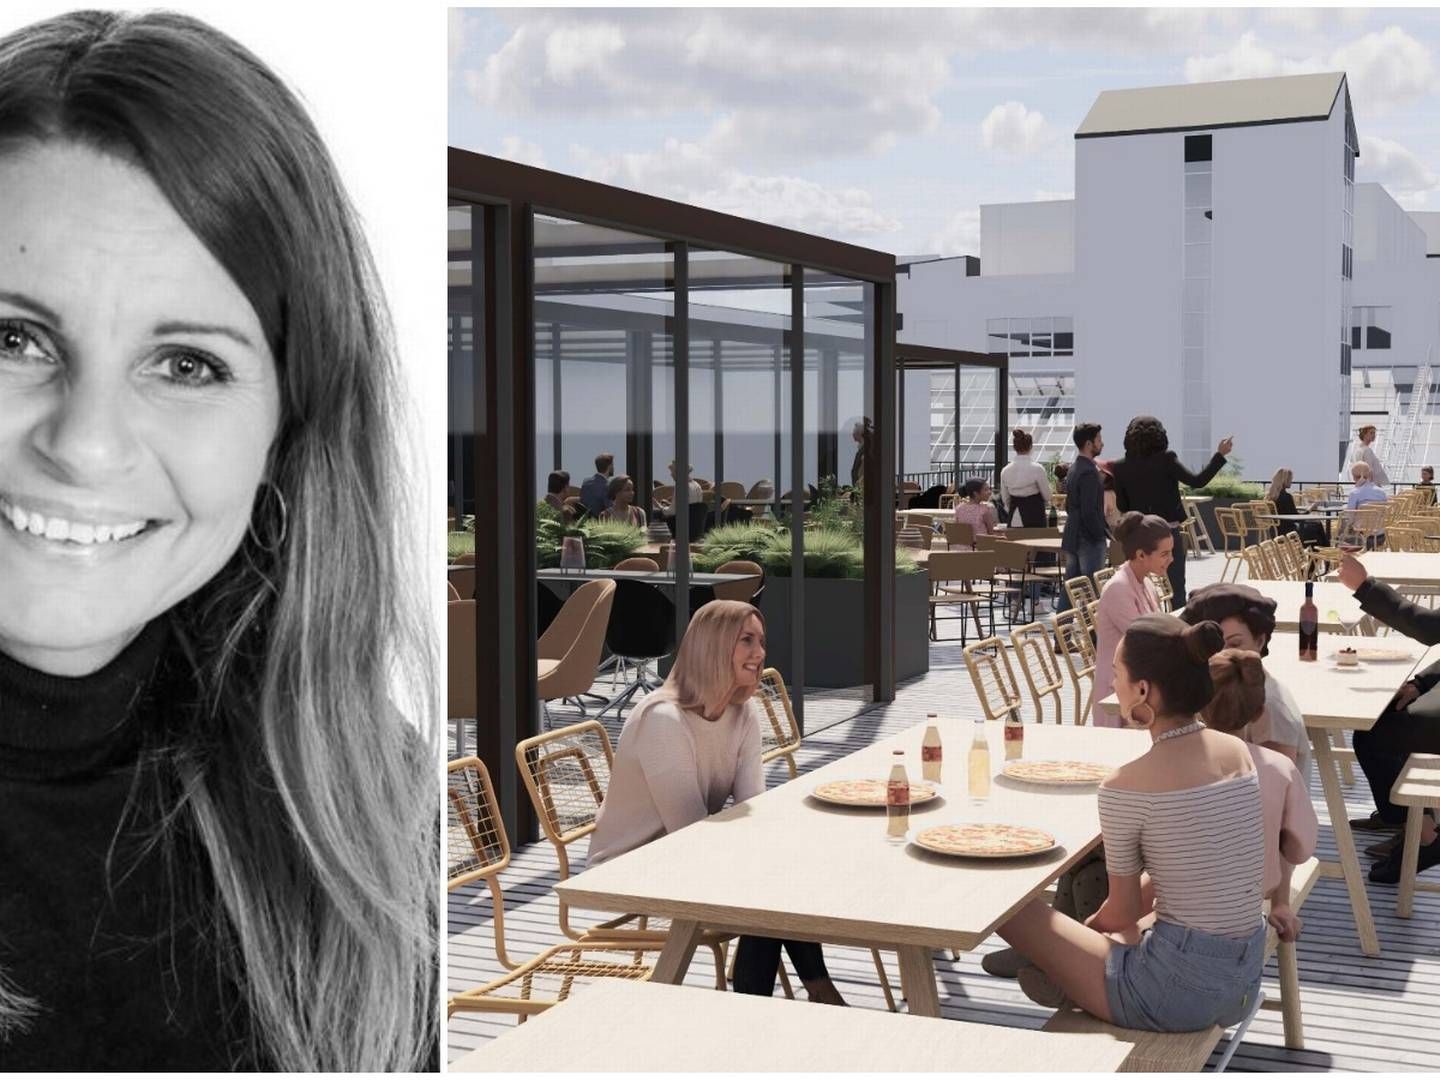 FÅR 700 SITTEPLASSER: Thon Eiendoms Hilde Kringlebotn kan ønske Olivia velkommen til Sandnes. Restauranten får over 700 spiseplasser over tre etasjer, inkludert takterrasse. | Foto: Thon Eiendom og Dark Arkitekter